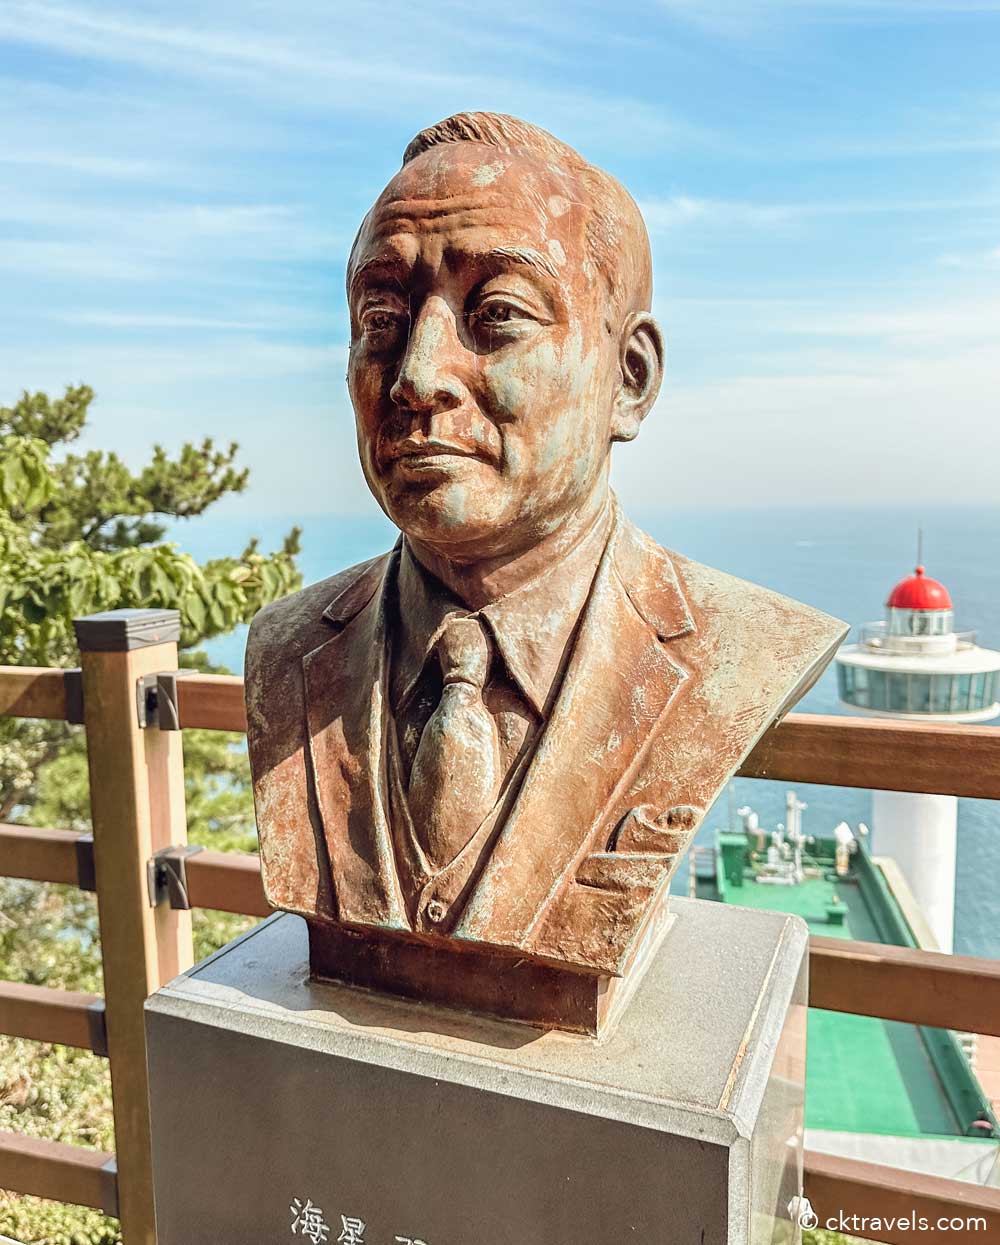 Yeongdo Lighthouse Busan Seaman’s Hall of Fame Spirit of the Ocean’ viewing platform